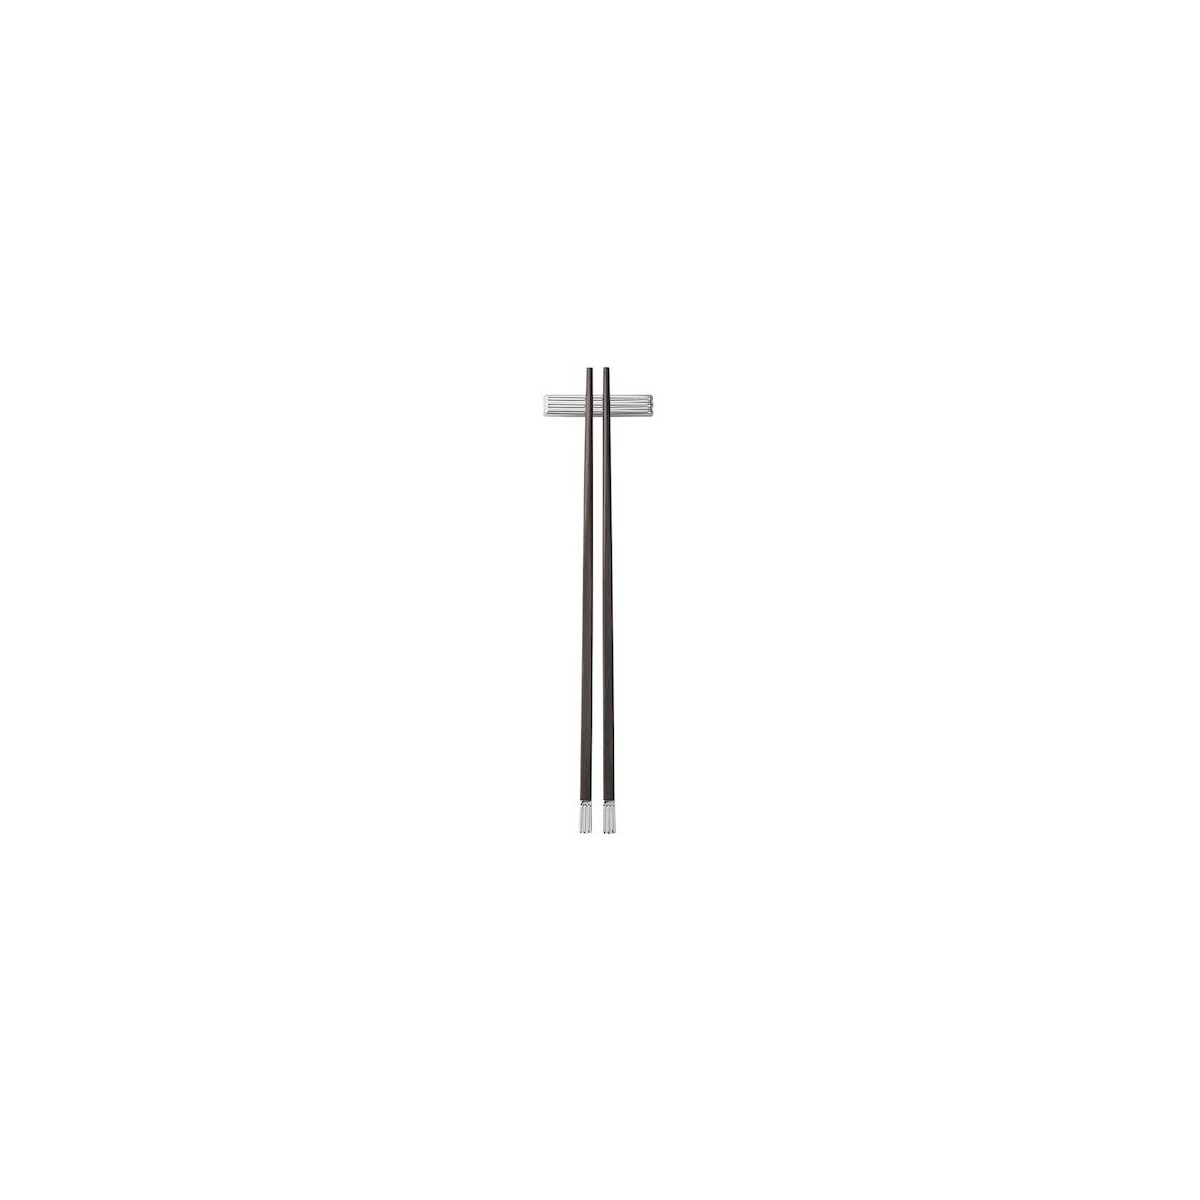 2 x chopsticks - Sigvard Bernadotte cutlery